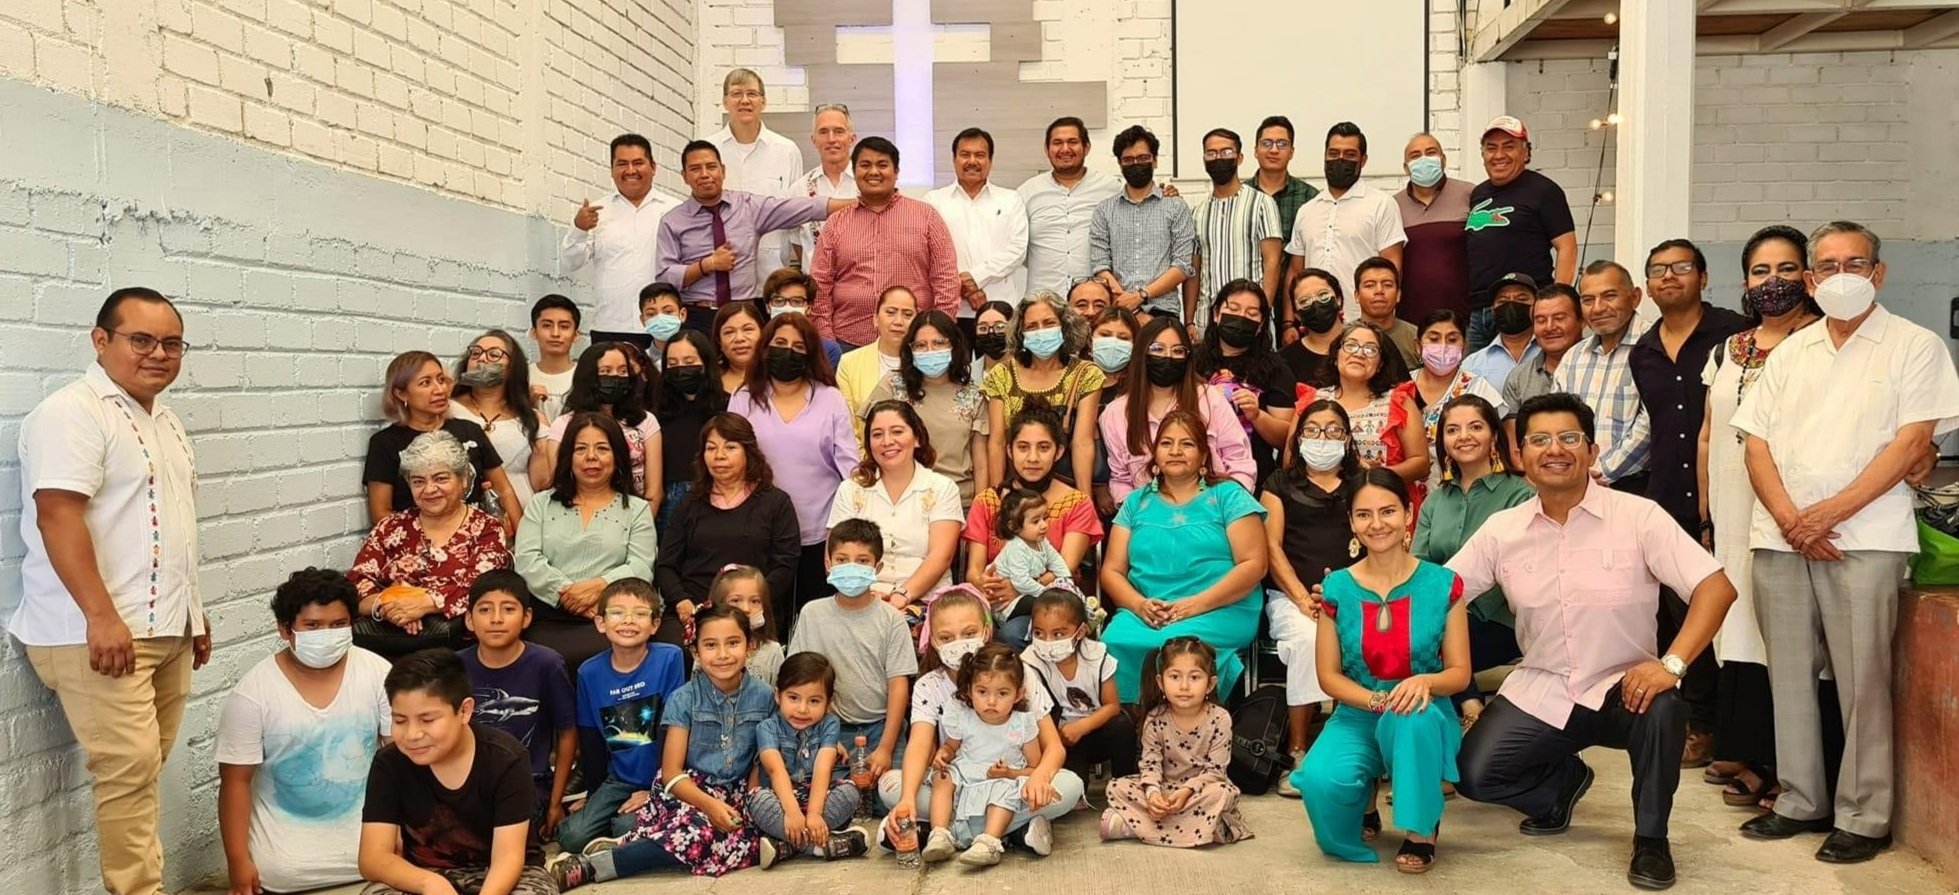  The congregation at Hospital de la Fe 